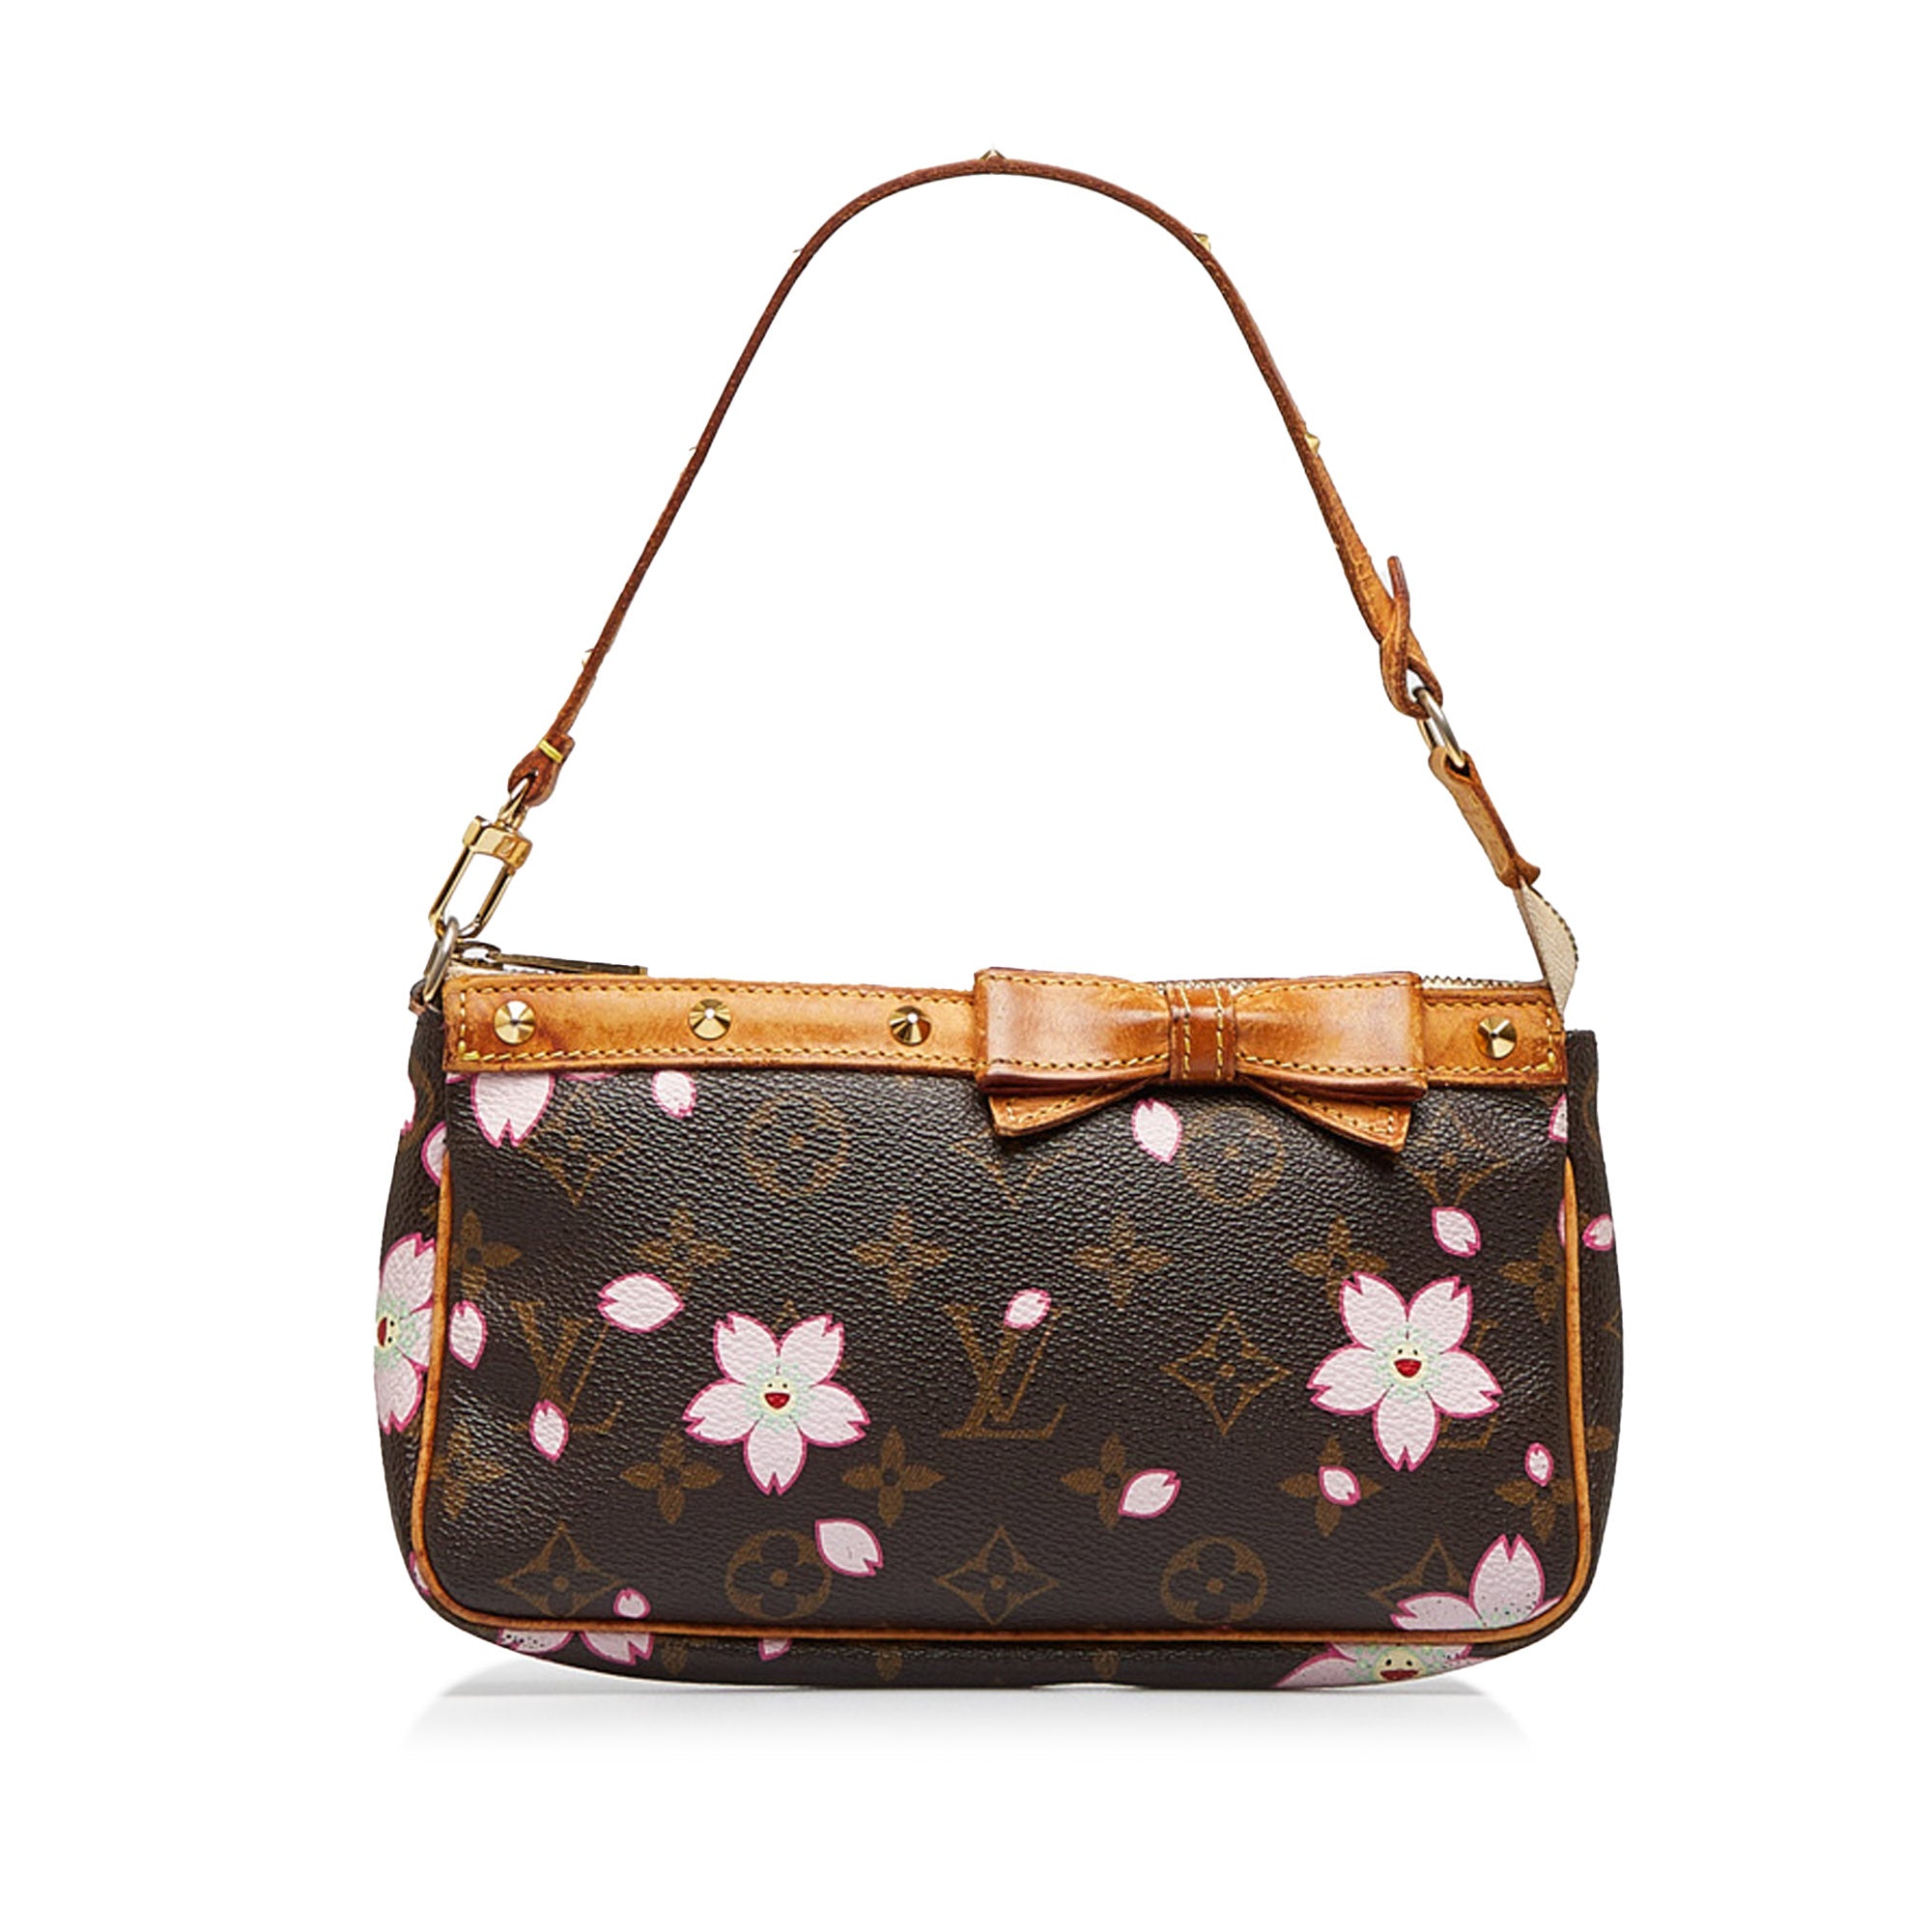 Louis Vuitton x Takashi Murakami monogram brown cherry blossom